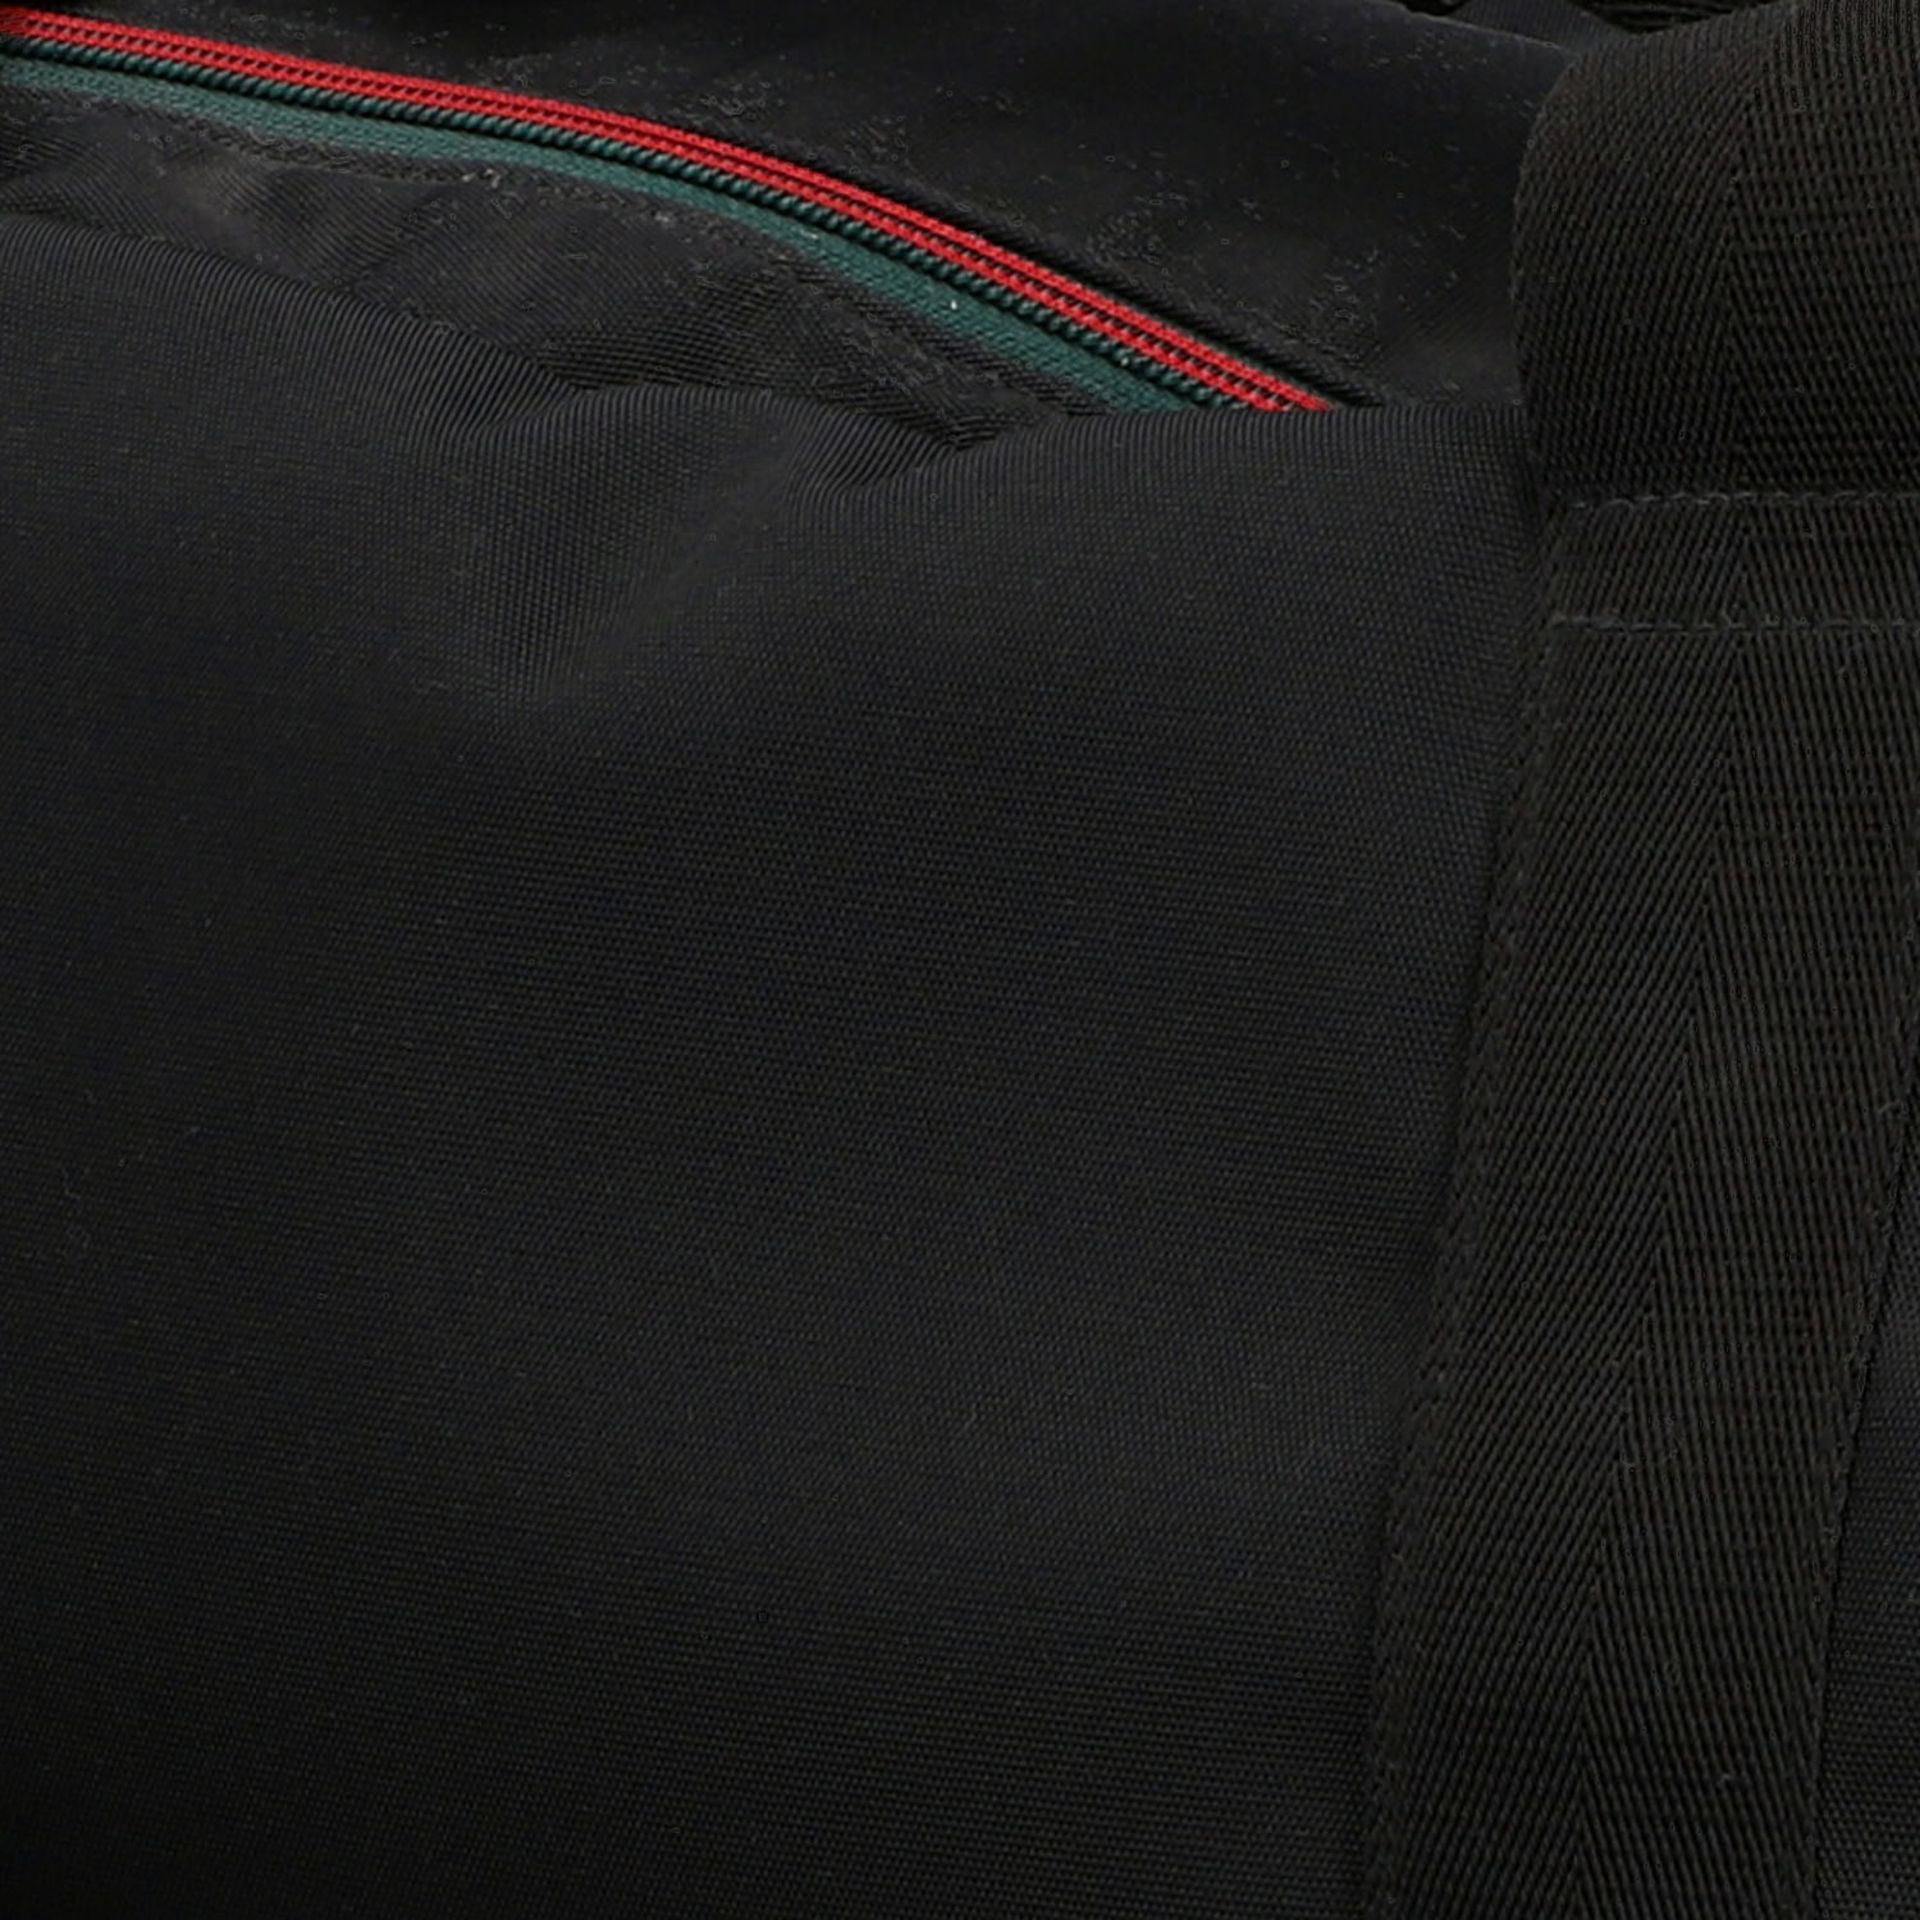 GUCCI Weekender.Textil in Schwarz mit klassischem Streifendetail in Rot/Grün am Reiß - Bild 8 aus 8